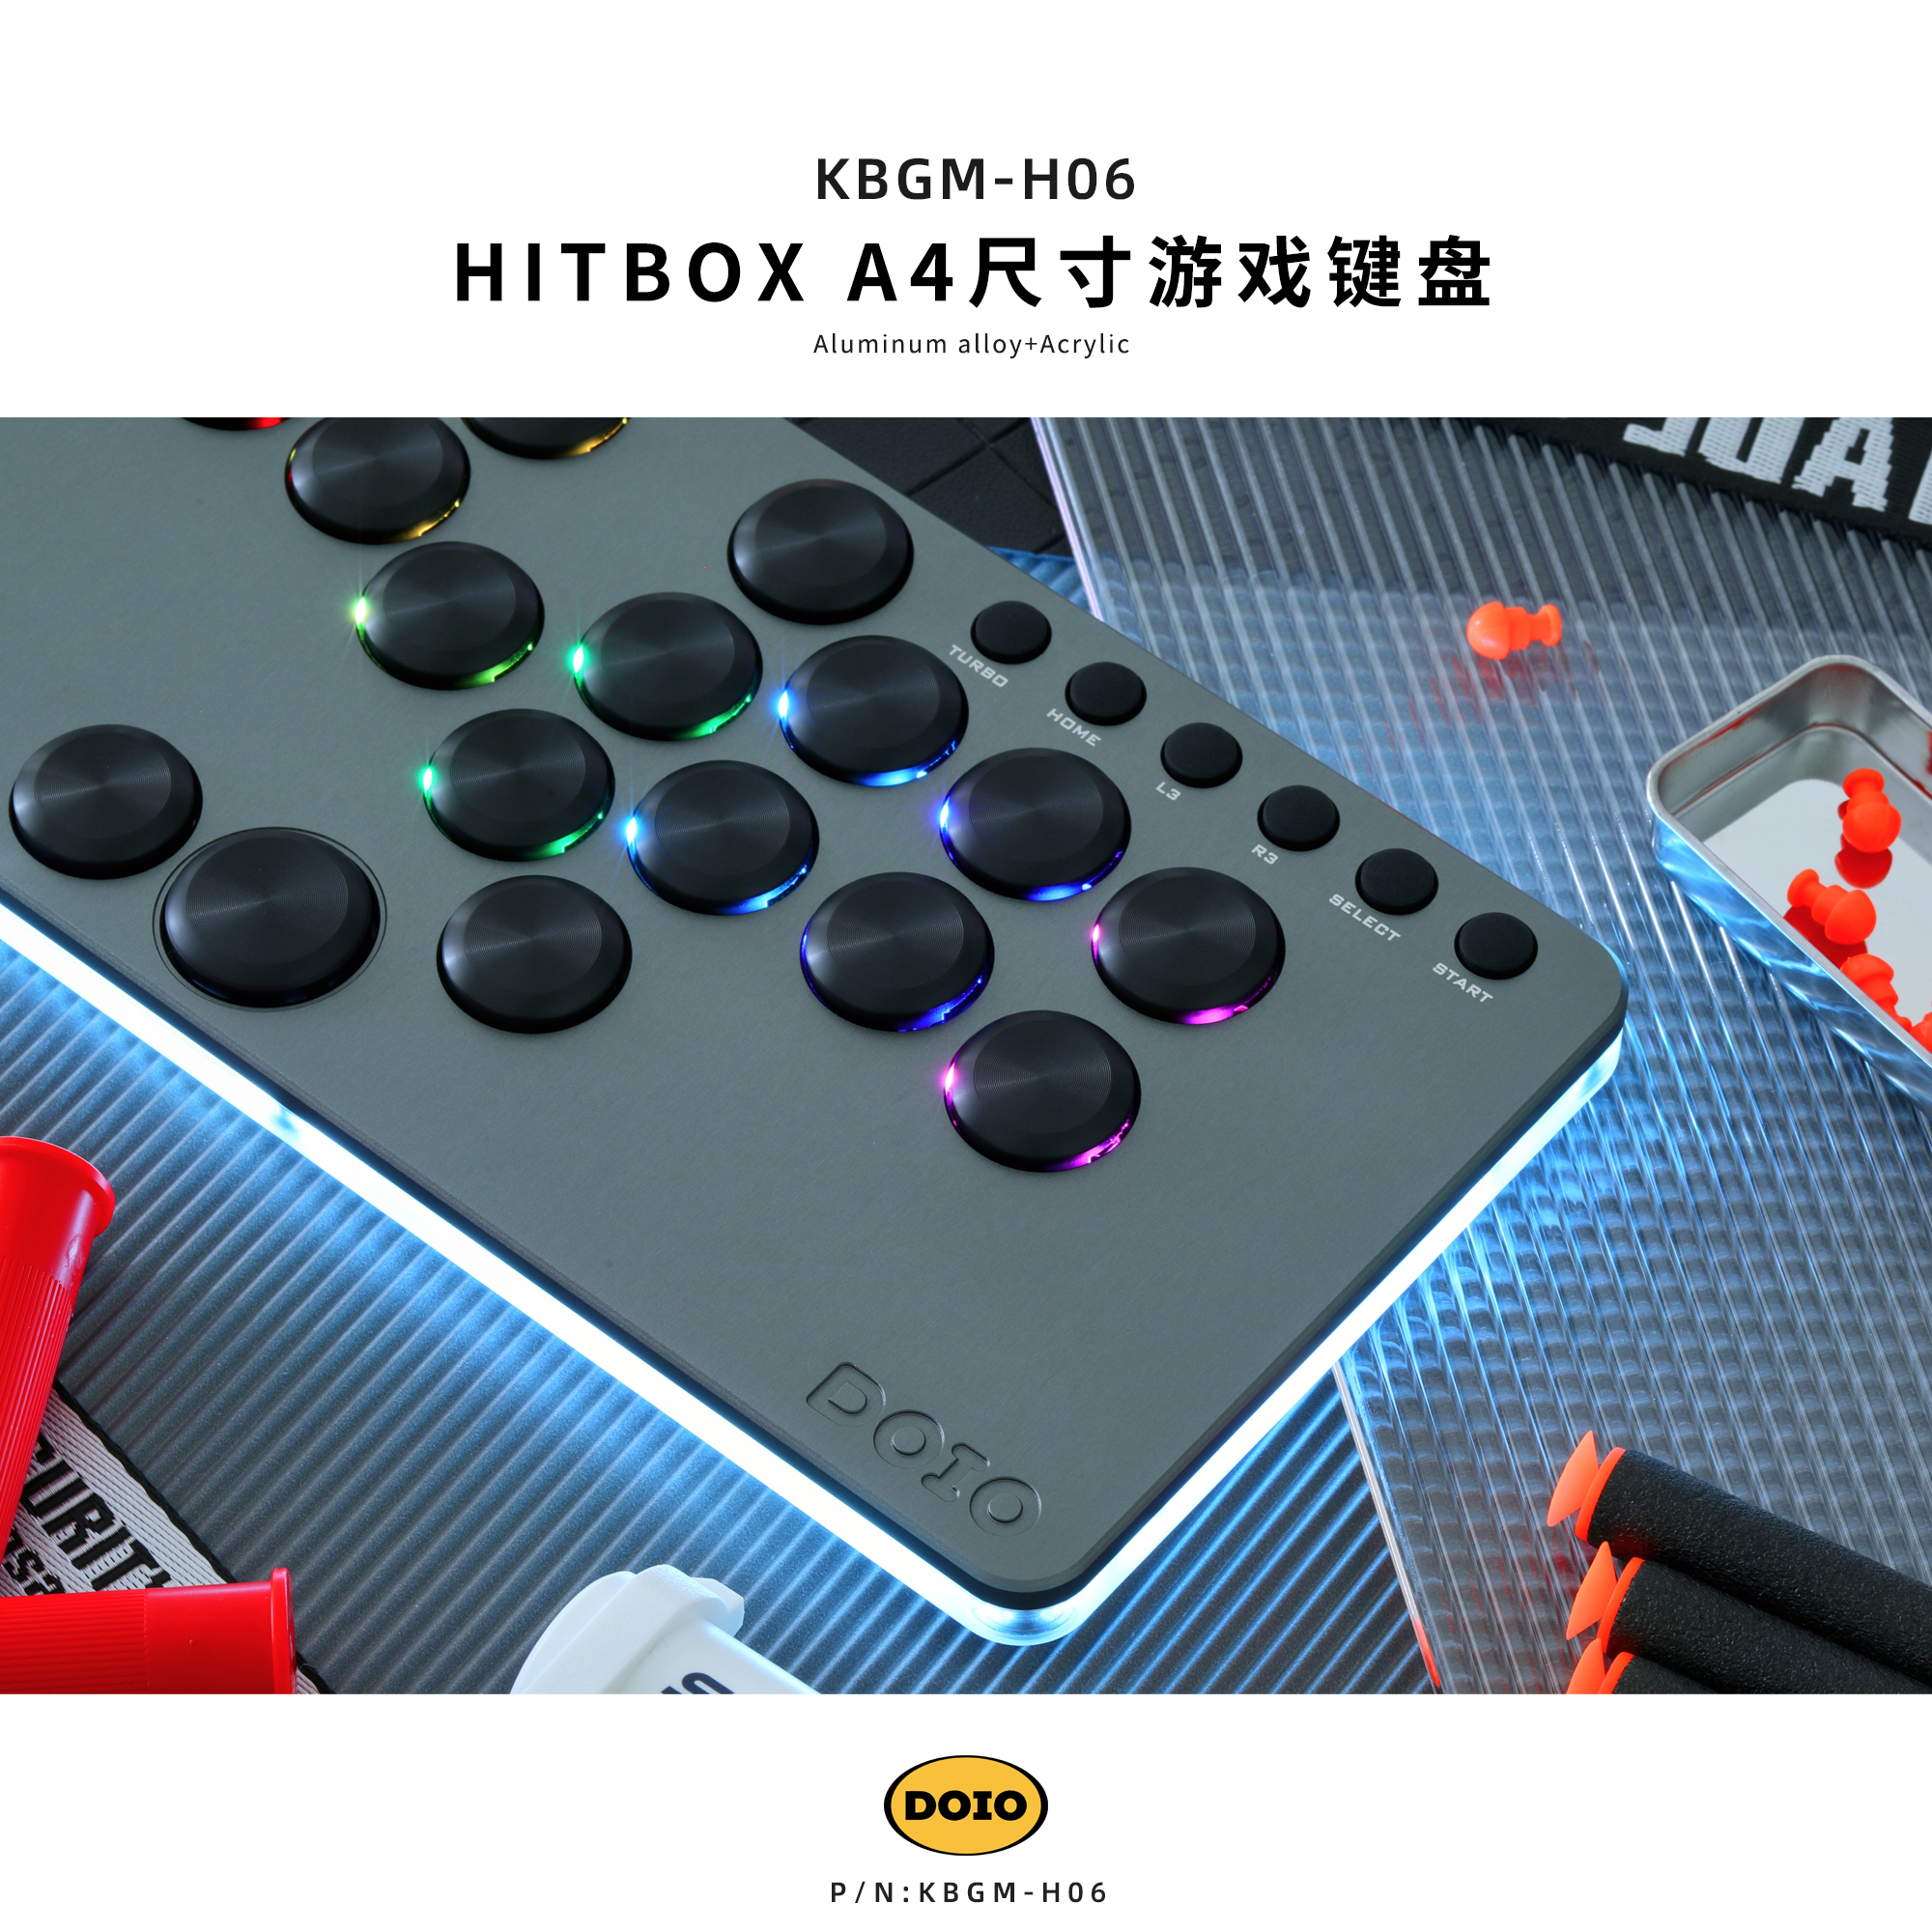 HITBOX A4 size gaming keyboard KBGM-H06